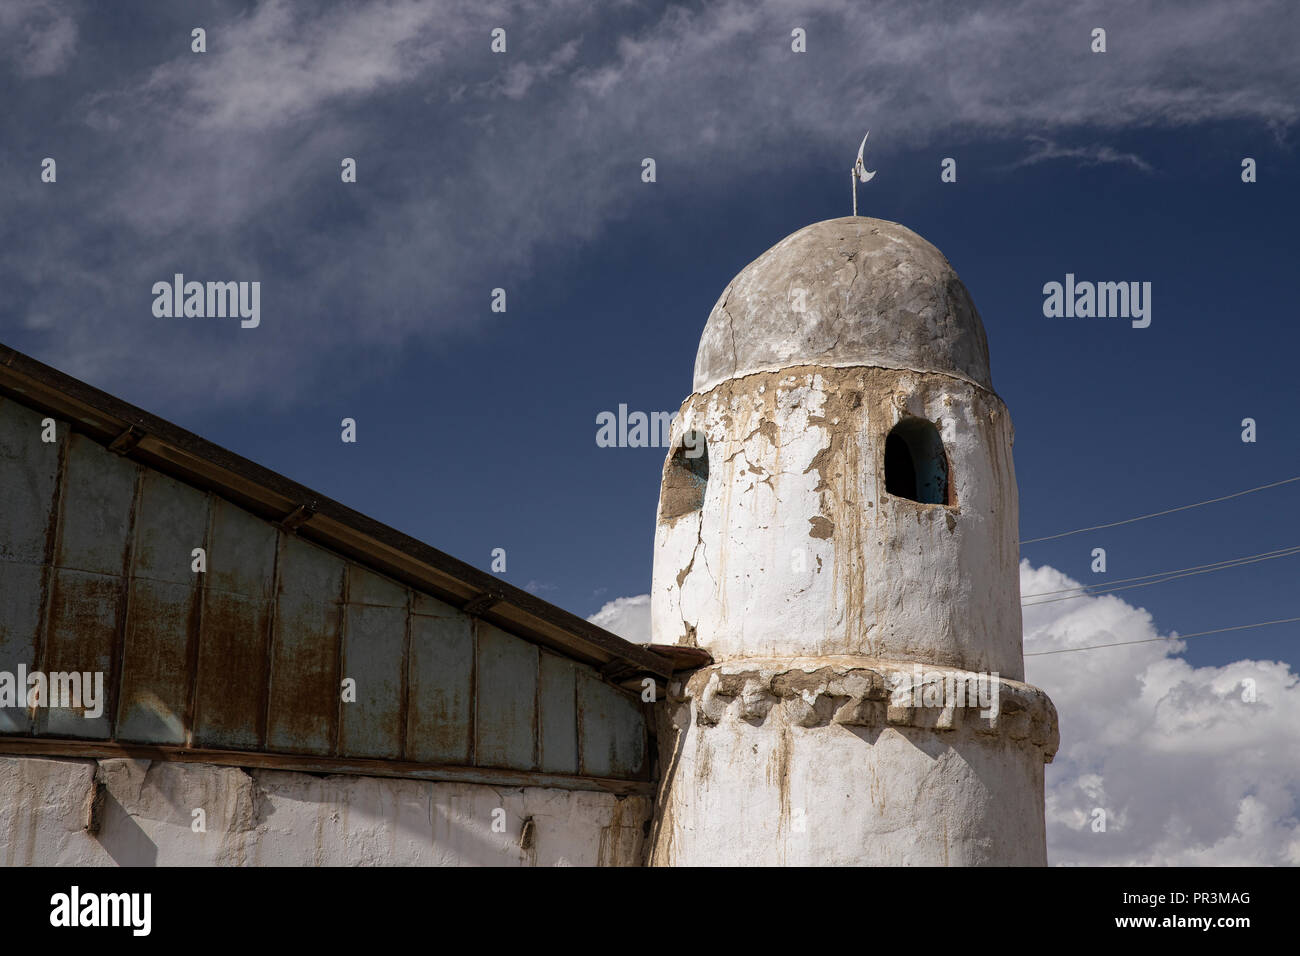 El hermoso minarete de la mezquita en la remota aldea de Karakul en el extremo oriental de la sección de la autopista de Pamir en Tayikistán. Foto de stock